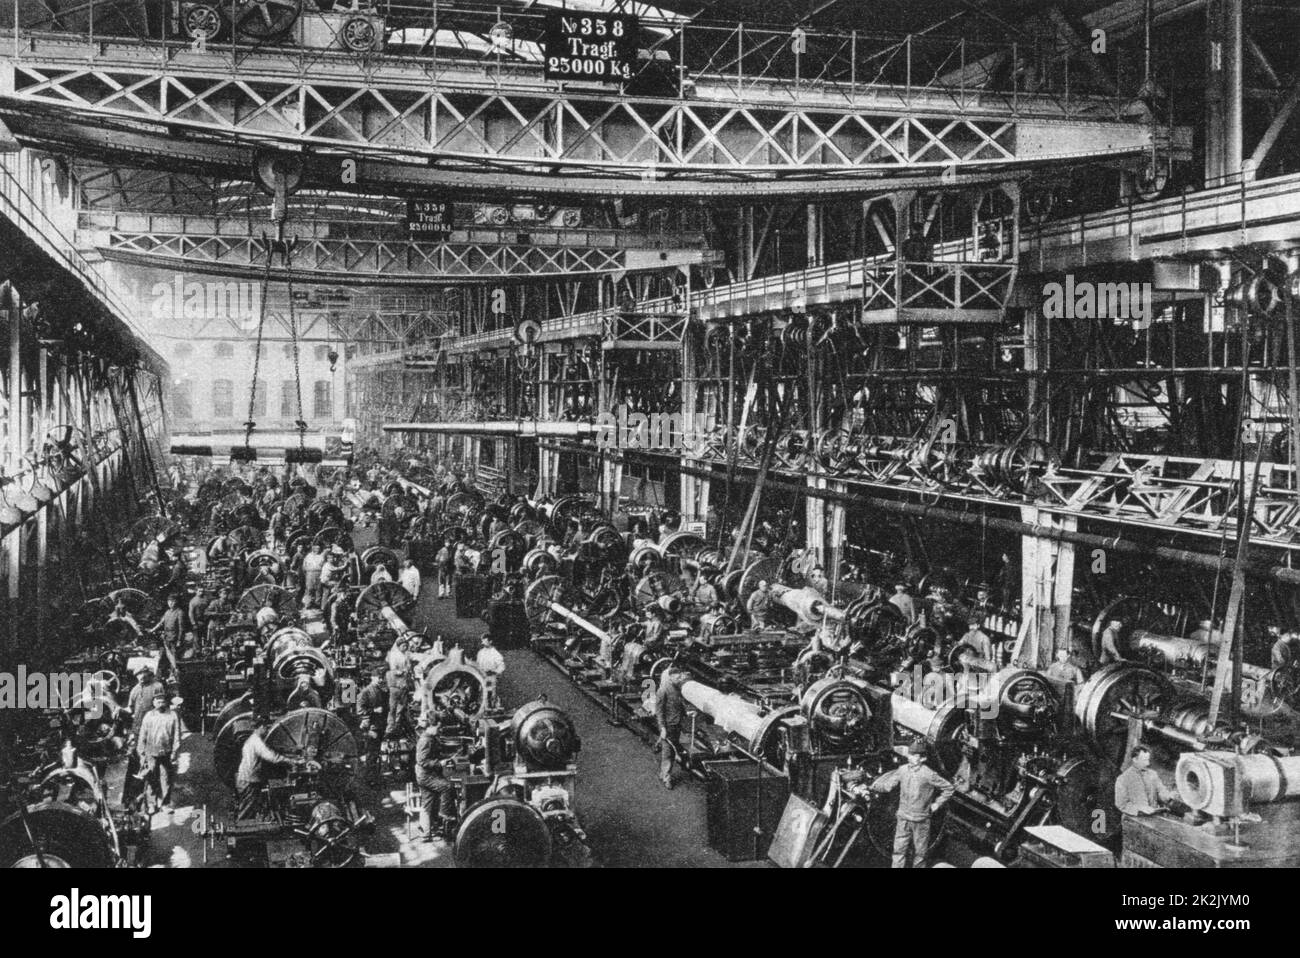 Première Guerre mondiale 1914-1918: Atelier Cannon, Krupp Works, Essen, Ruhr, Allemagne, 1917. Atelier de machines avec ponts roulants et transmission de puissance par courroie et arbre. Banque D'Images